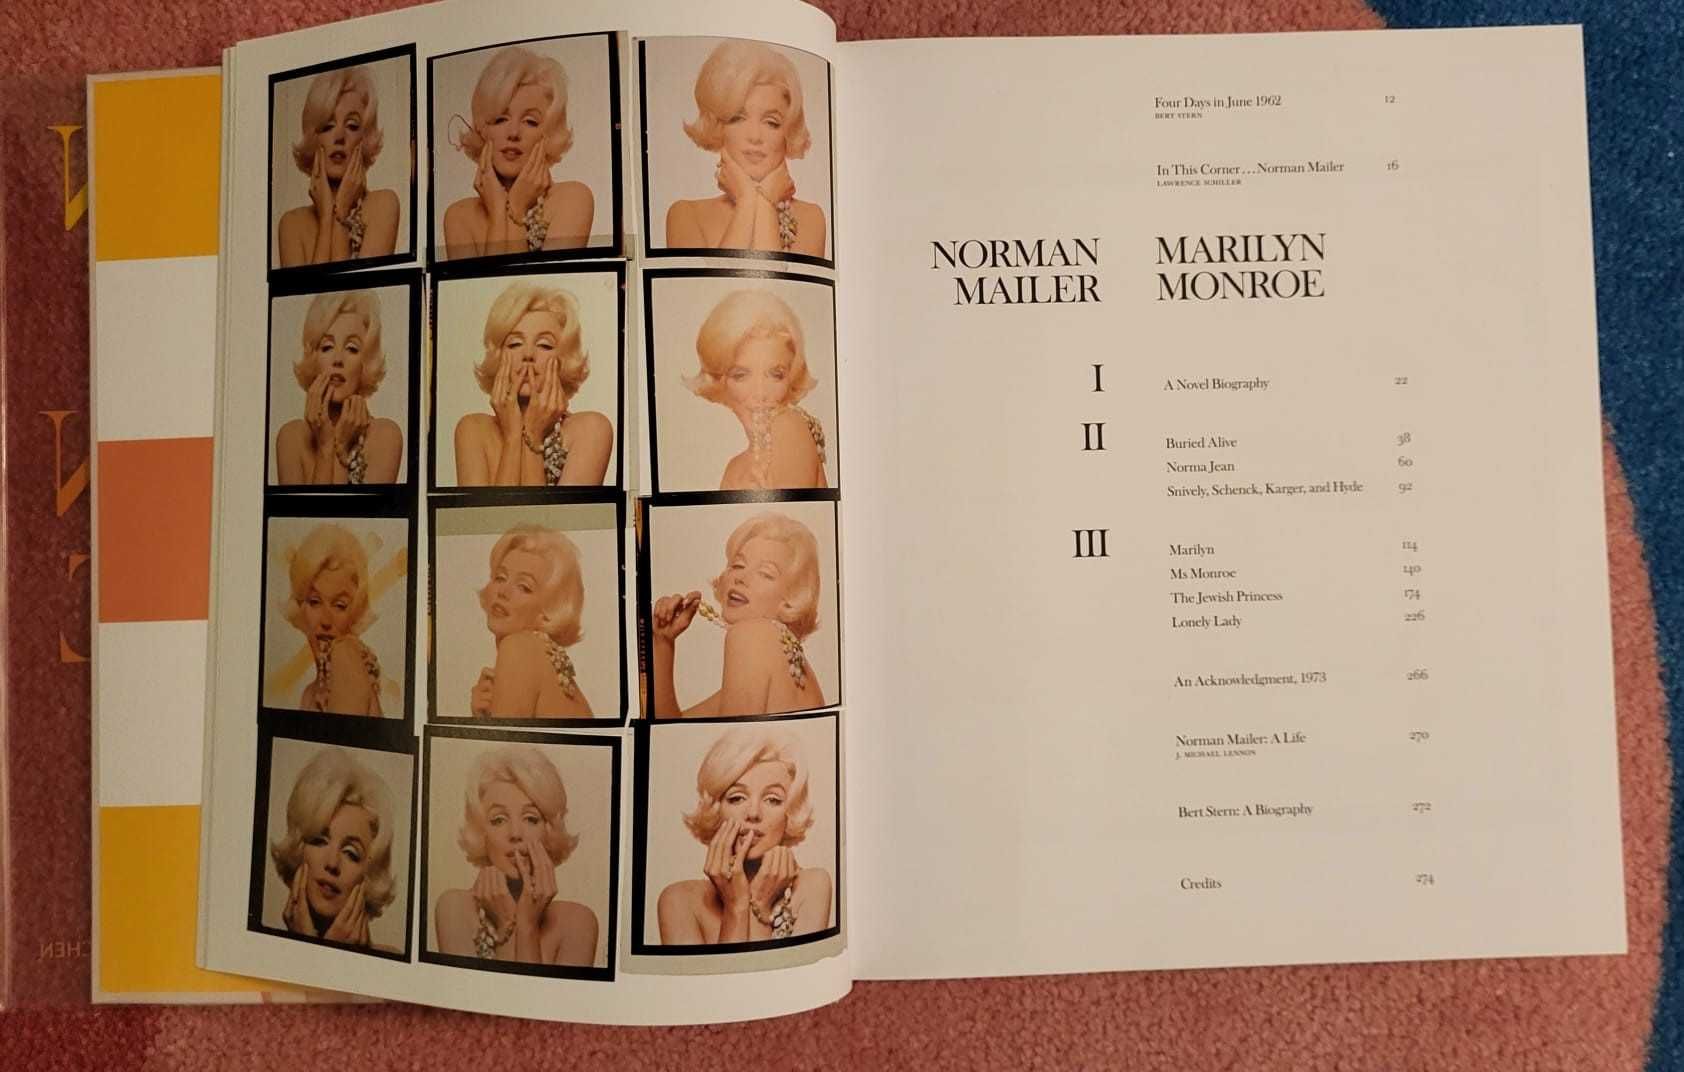 Editie de colectie Taschen - Norman Mailer. Bert Stern- Marilyn Monroe